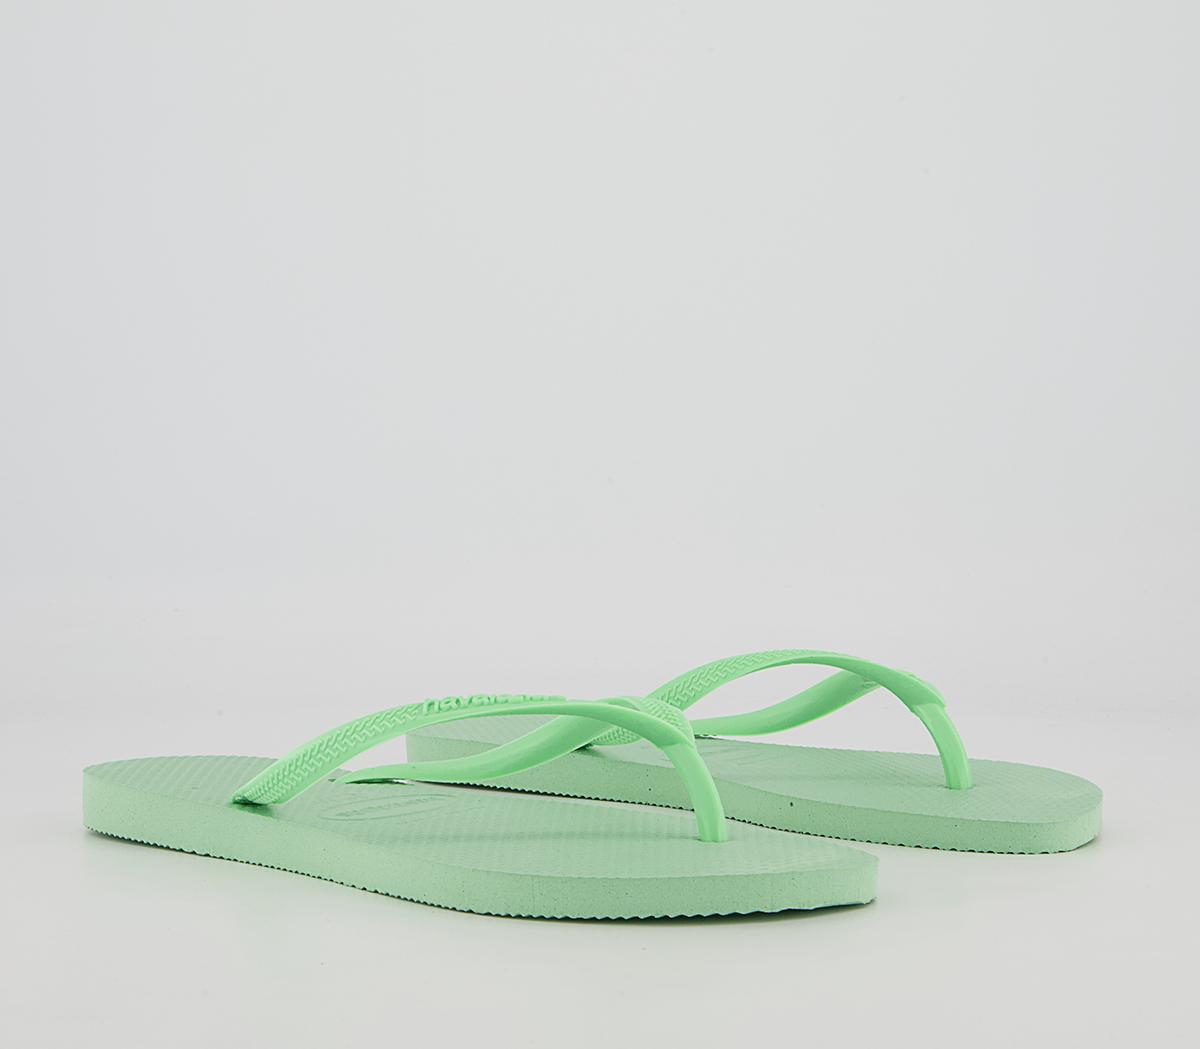 Havaianas Slim Flip Flops Green Garden - Women’s Sandals